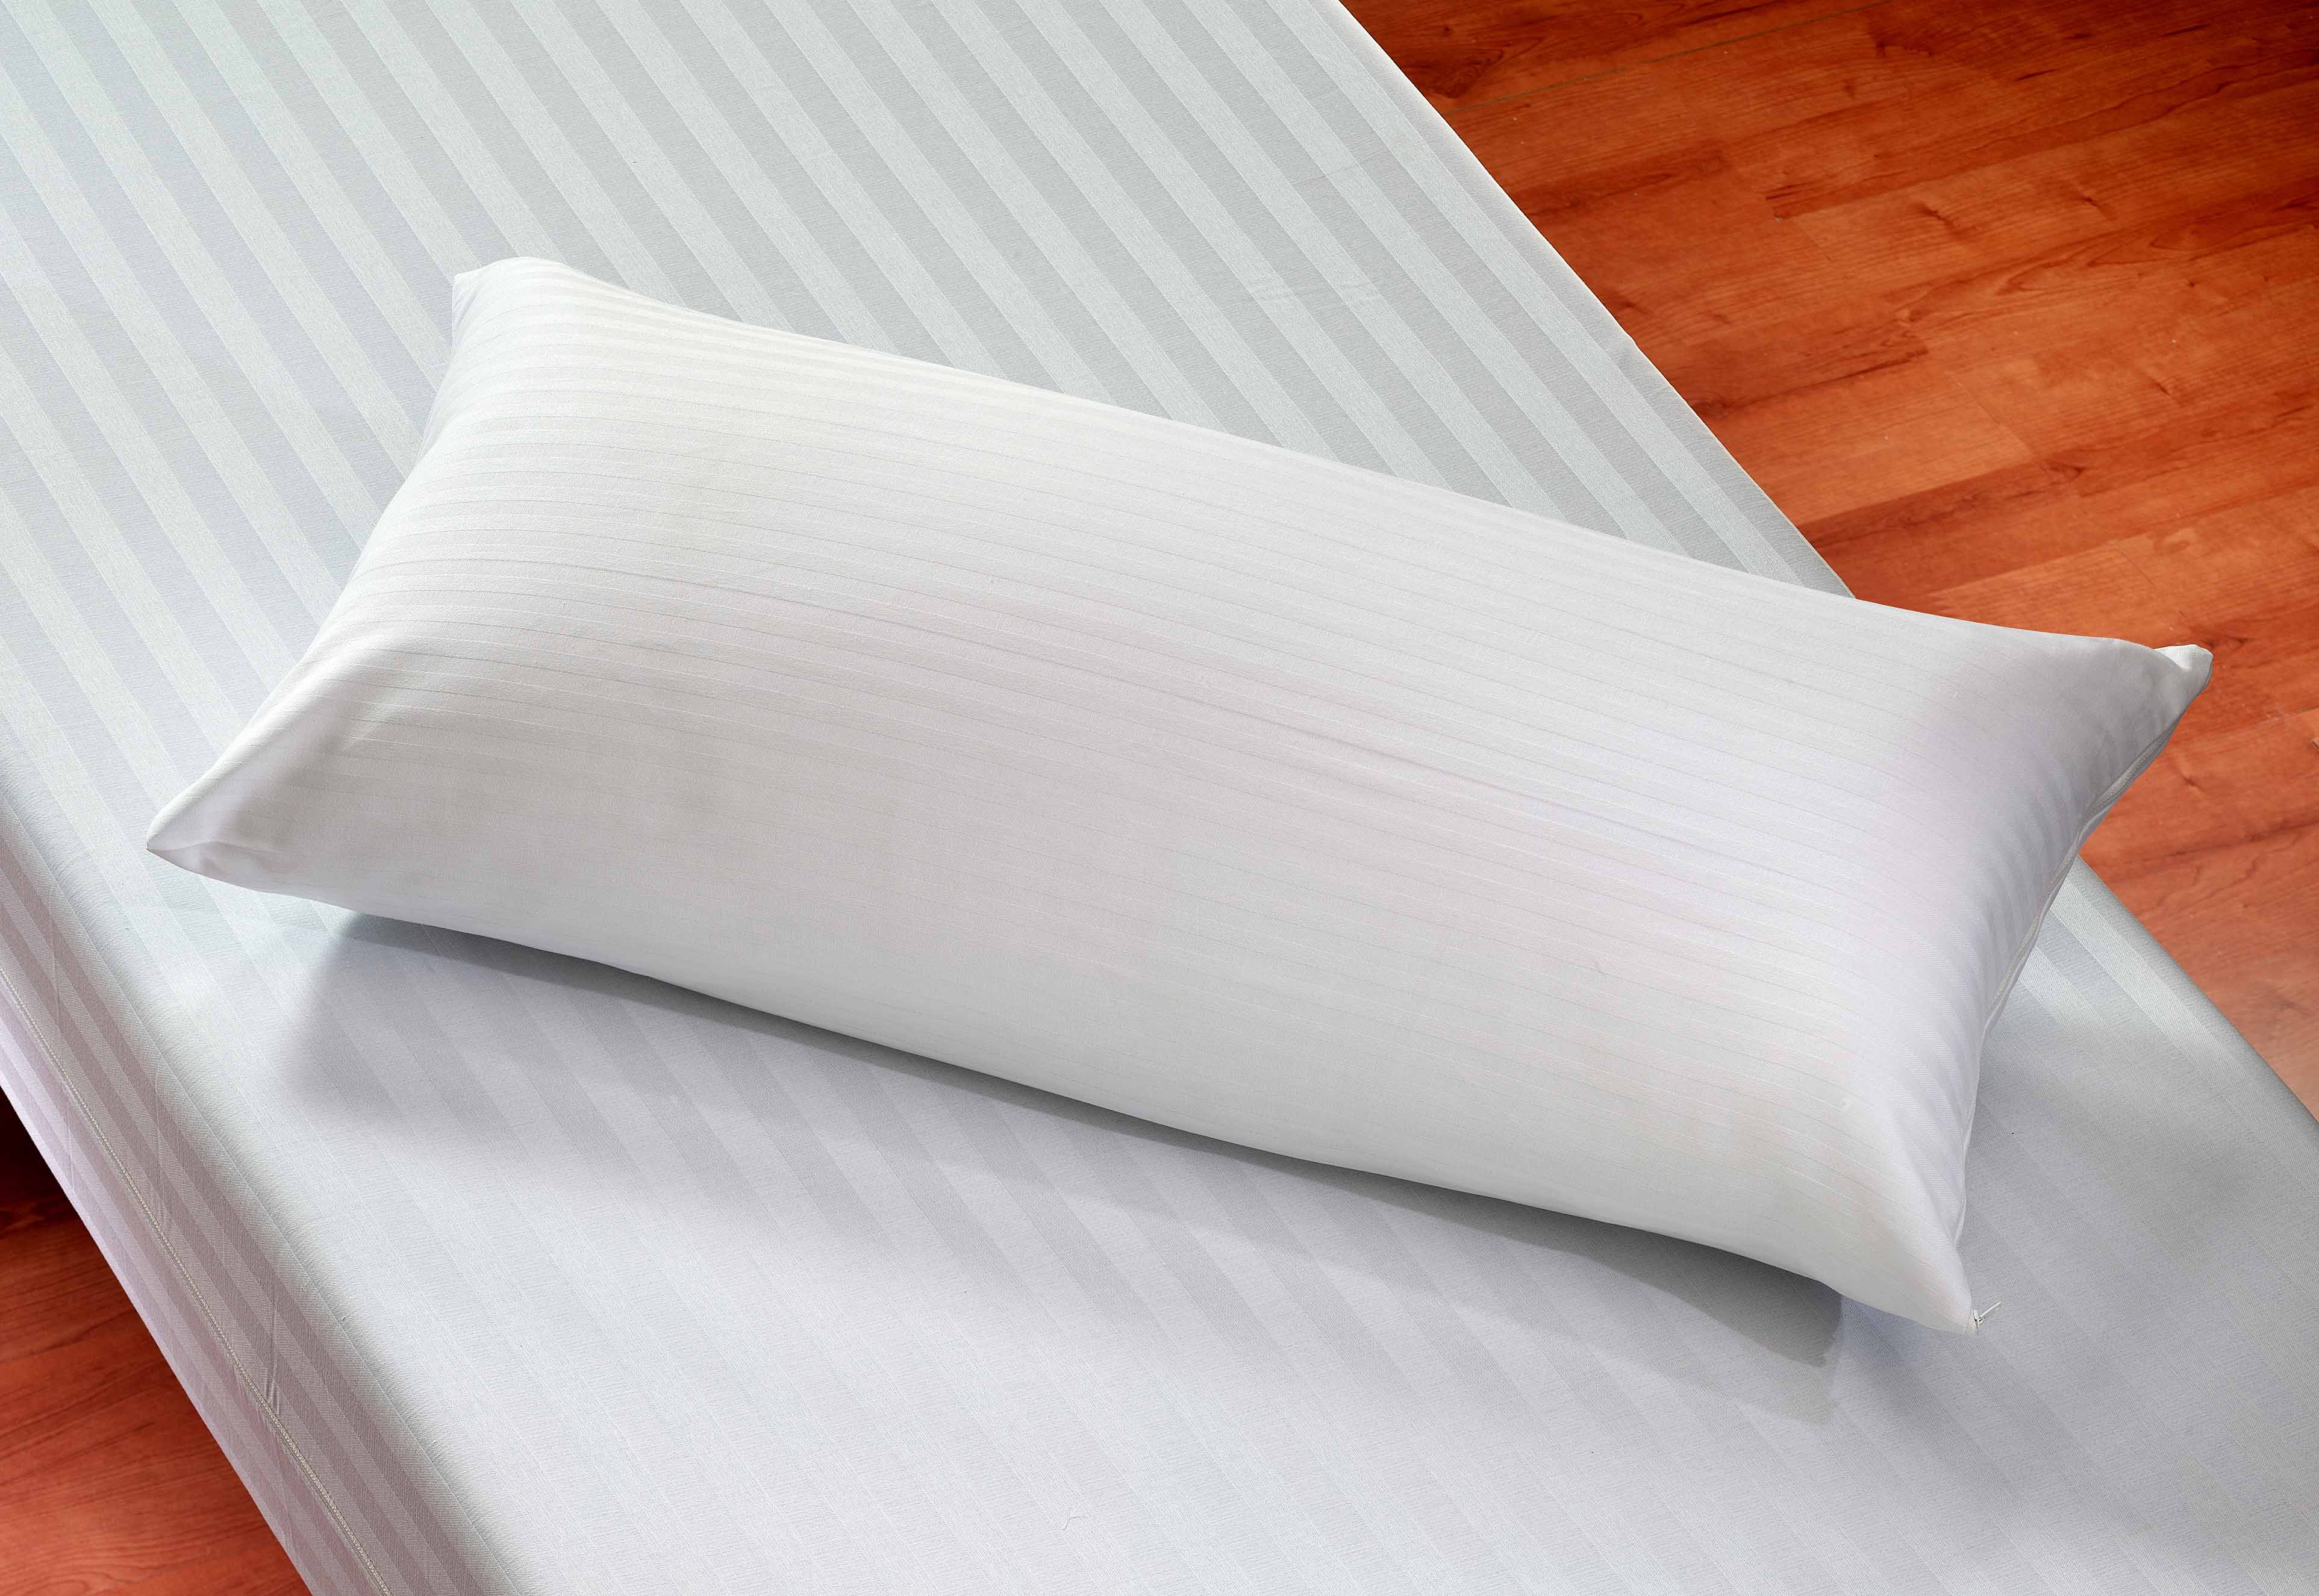 Tipos de almohadas que existen